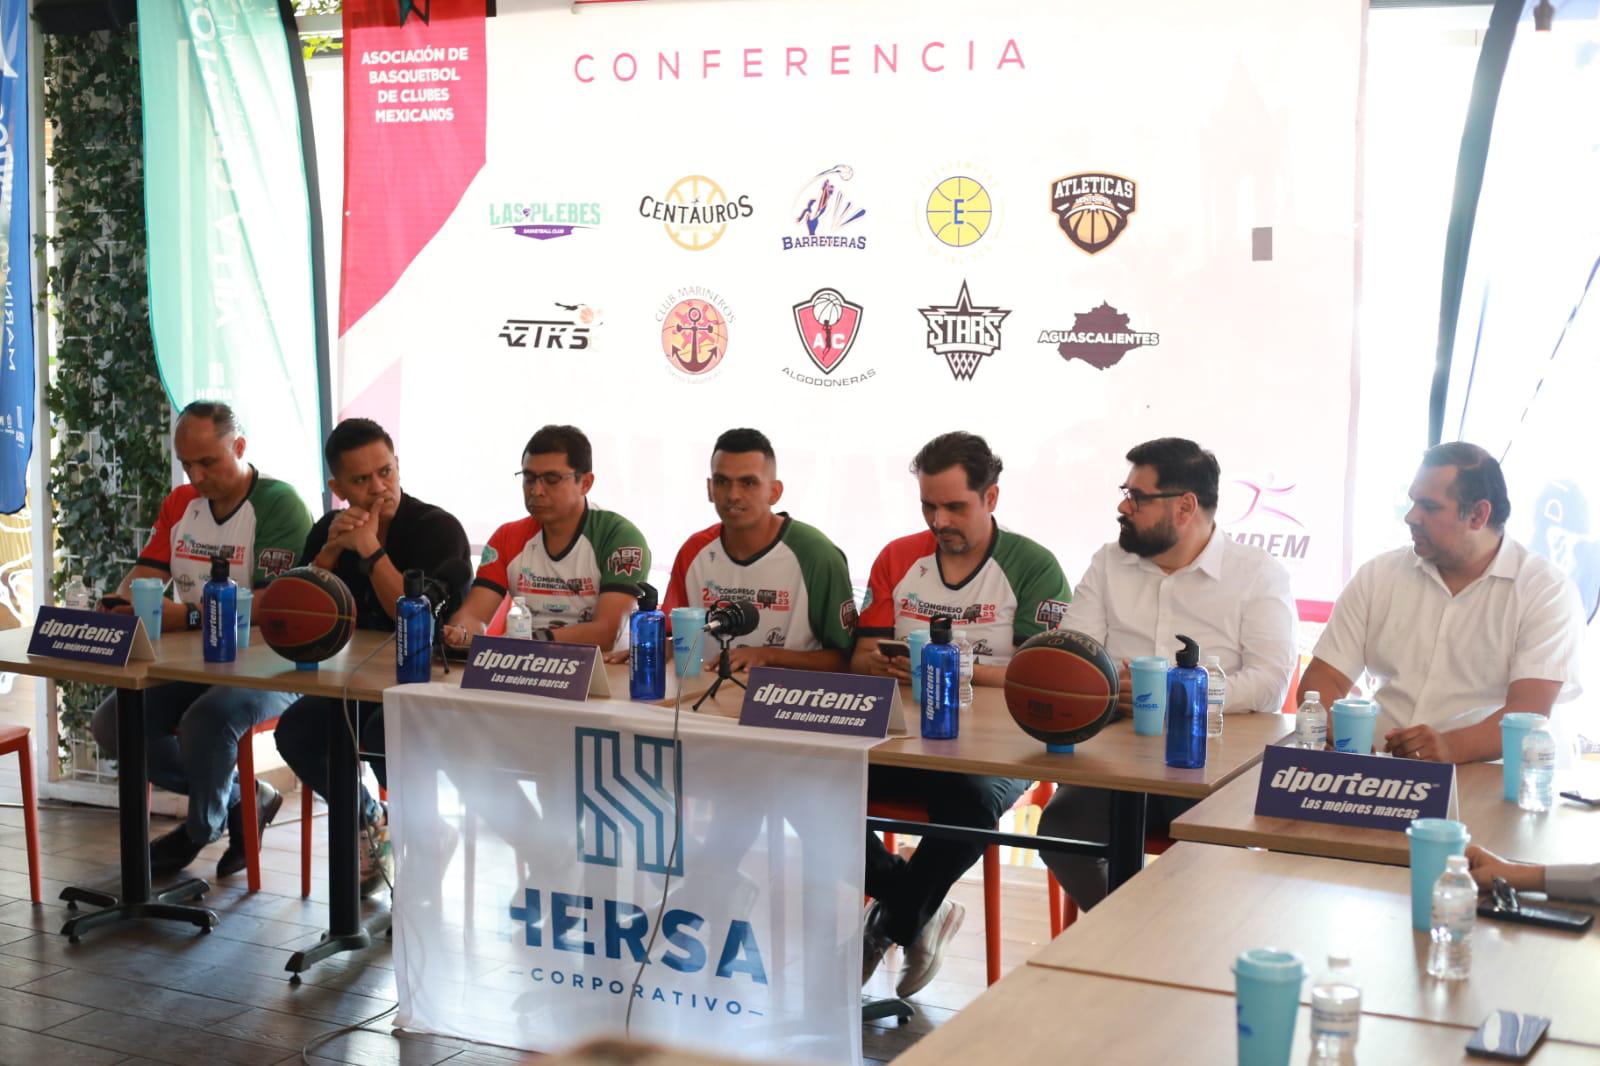 $!Confirman Las Plebes Basketball participación en ABC MEX